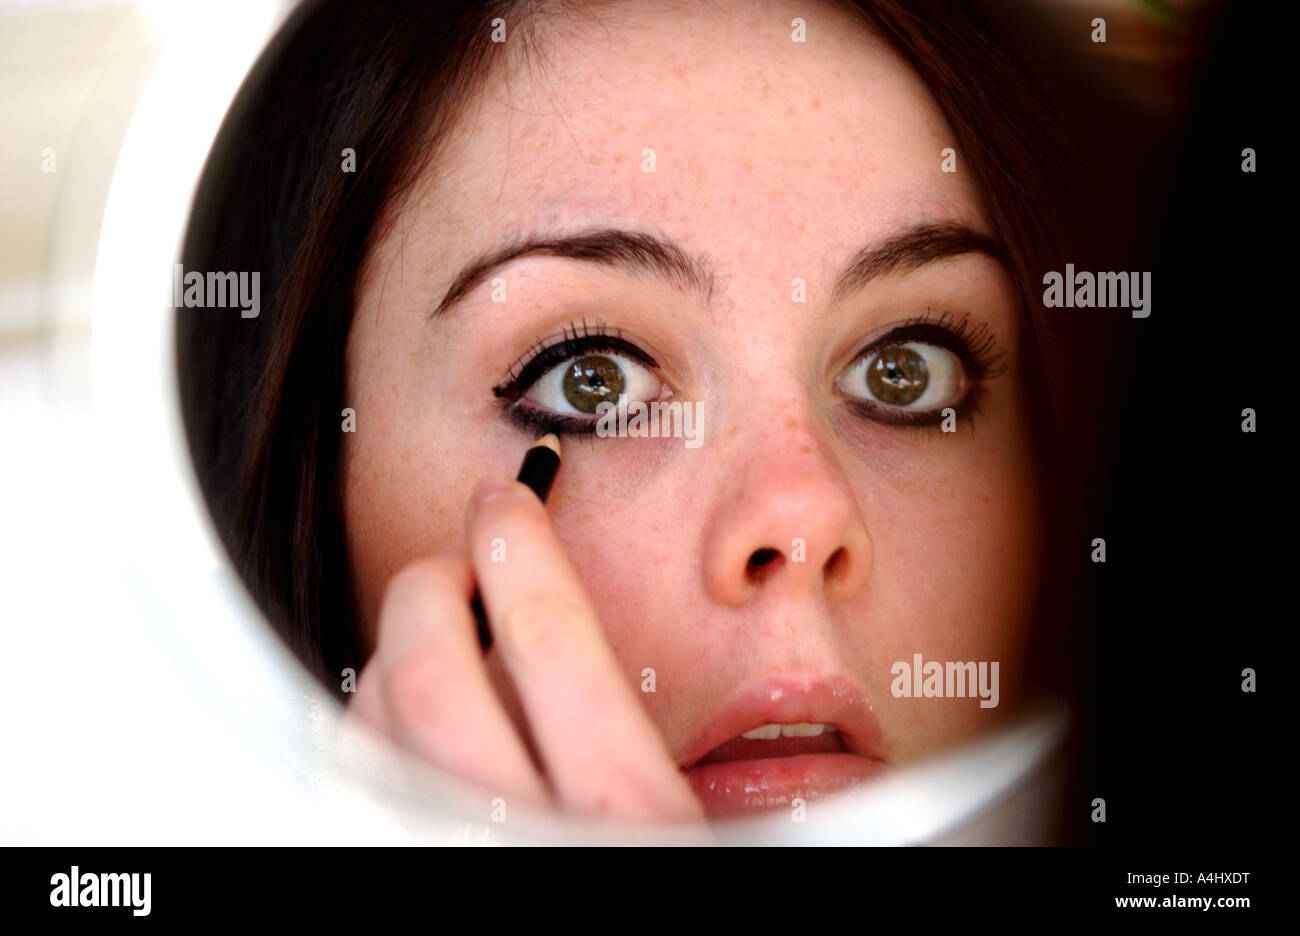 Brunette model young girl teenage applying eye makeup in mirror Stock Photo